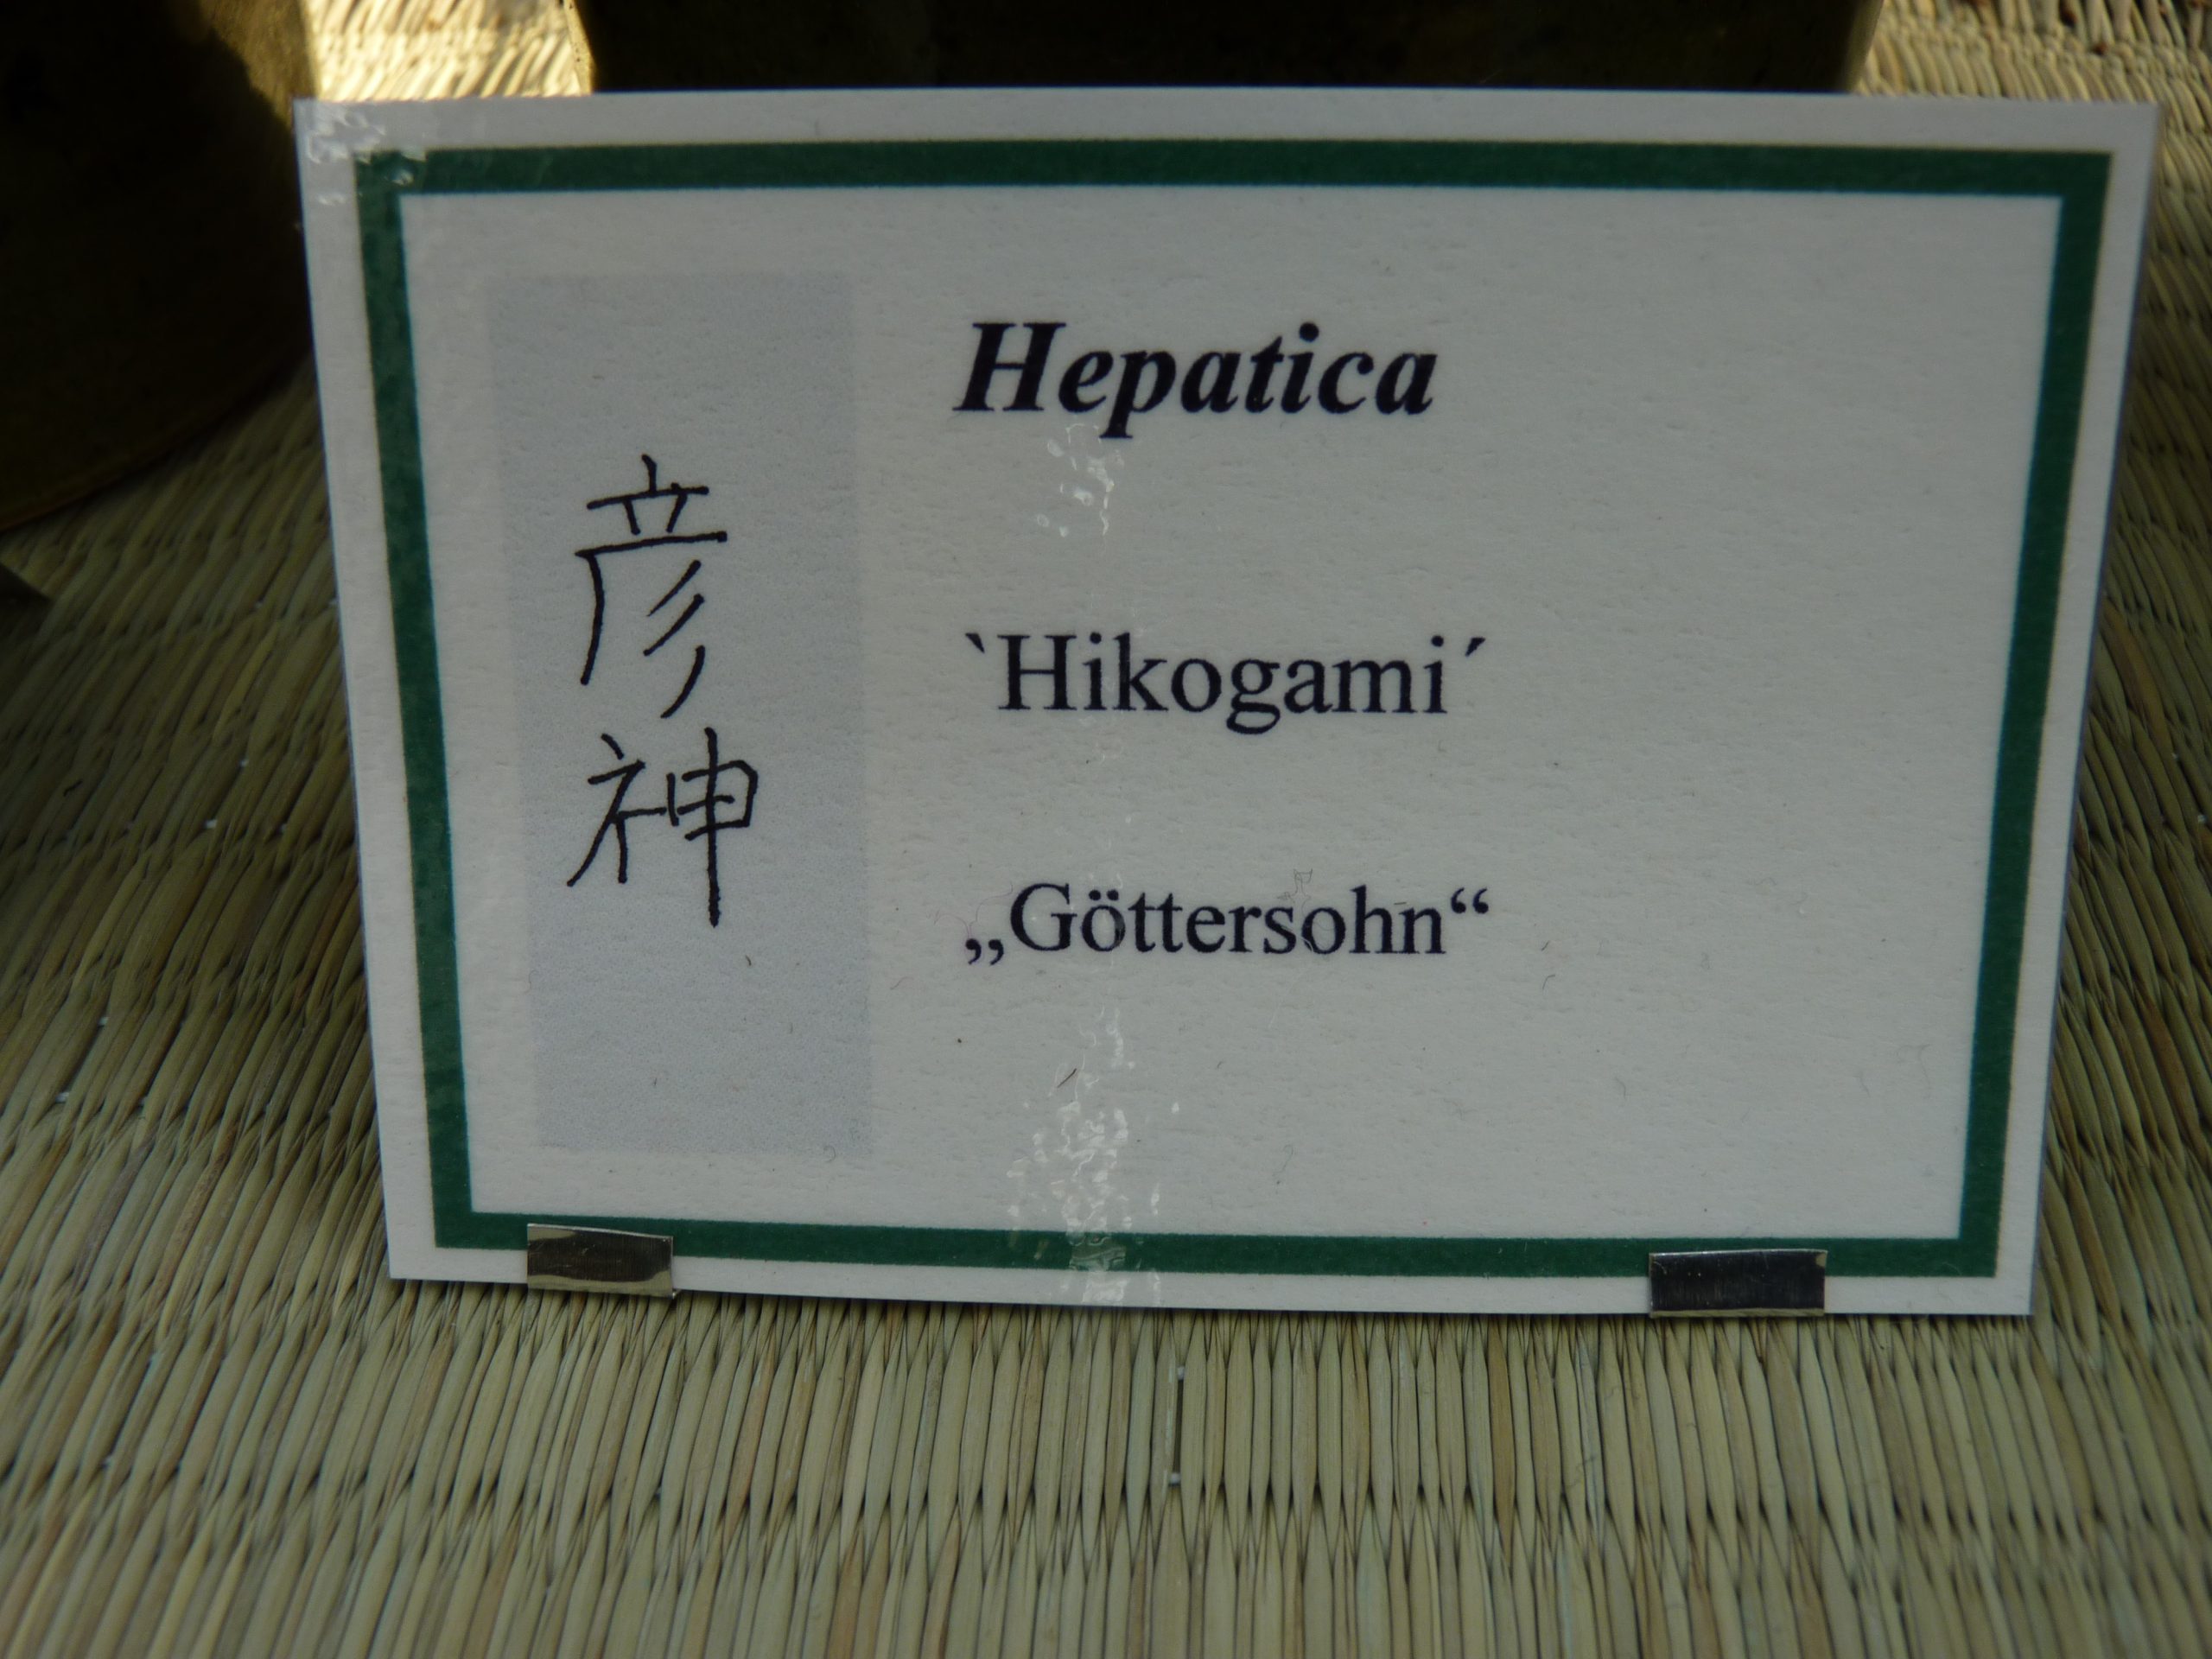 Hepatica japonica var. magna Hikogami